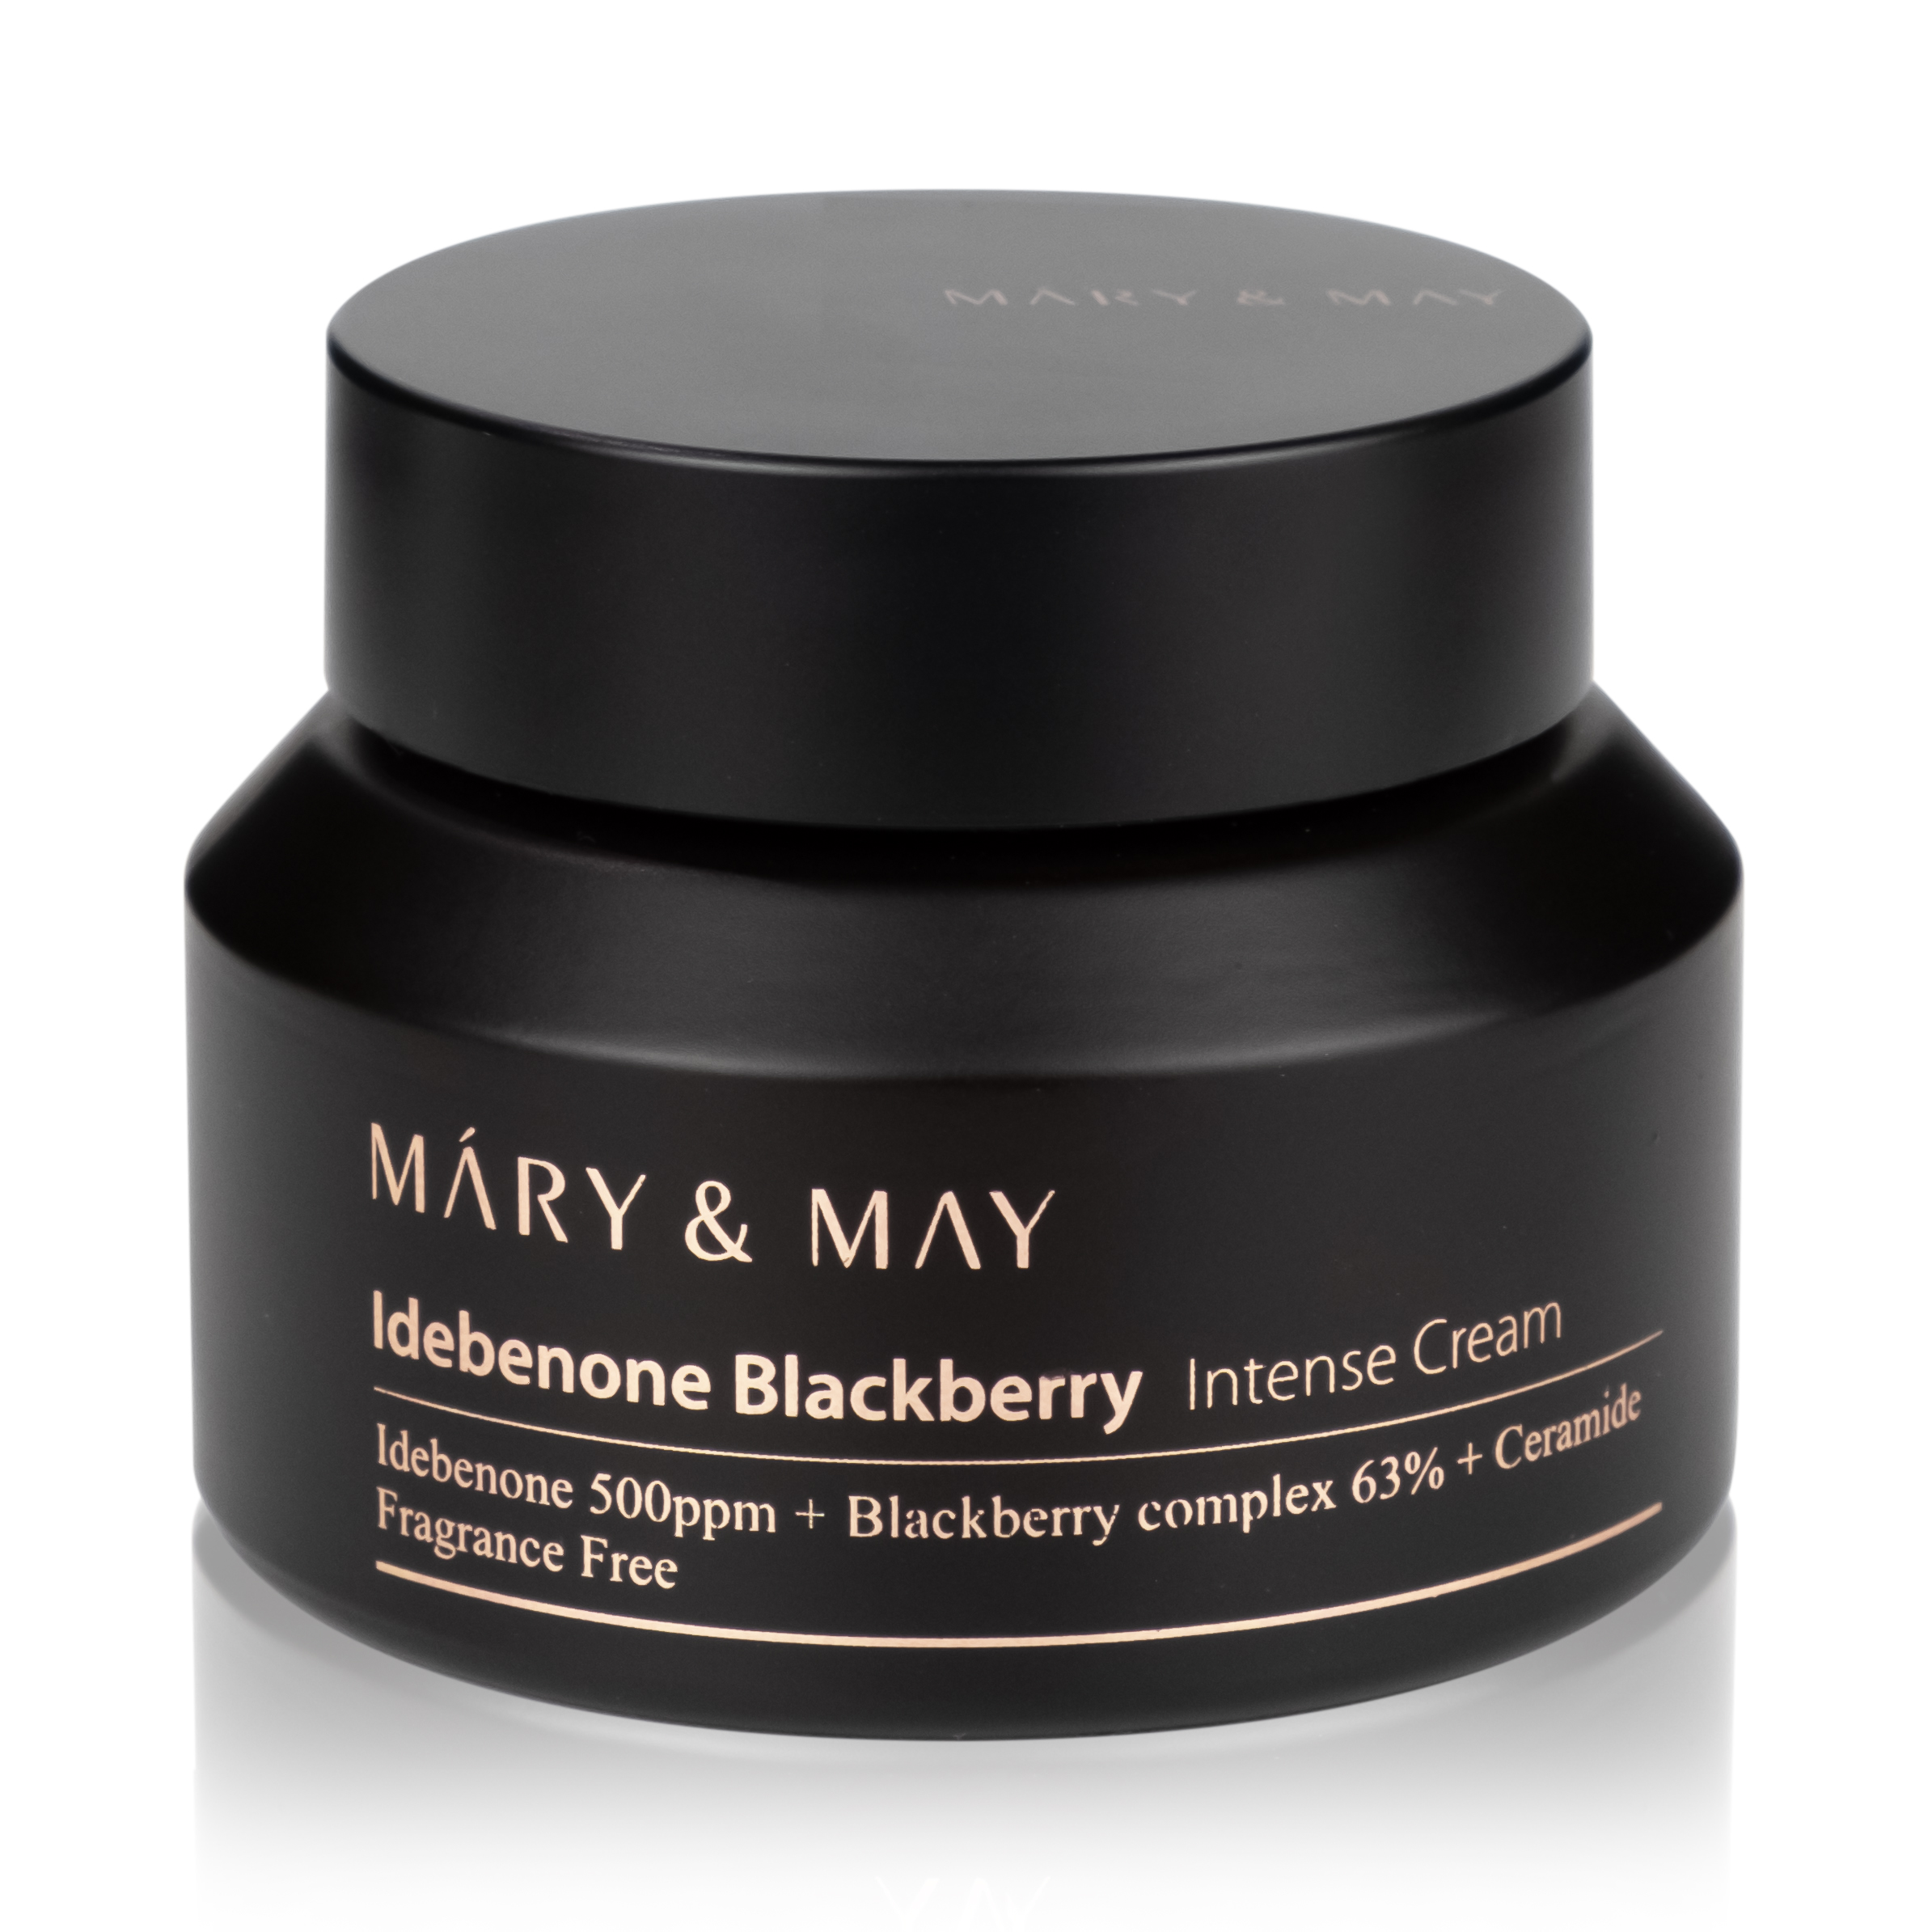 Крем may. Mary&May крем Idebenone BLACKBERRY intense Cream. Mary May Idebenone BLACKBERRY. Mary&May сыворотка Idebenone BLACKBERRY. Крем с идебеноном и ежевичным комплексом | Mary&May Idebenone BLACKBERRY intense Cream 70g.